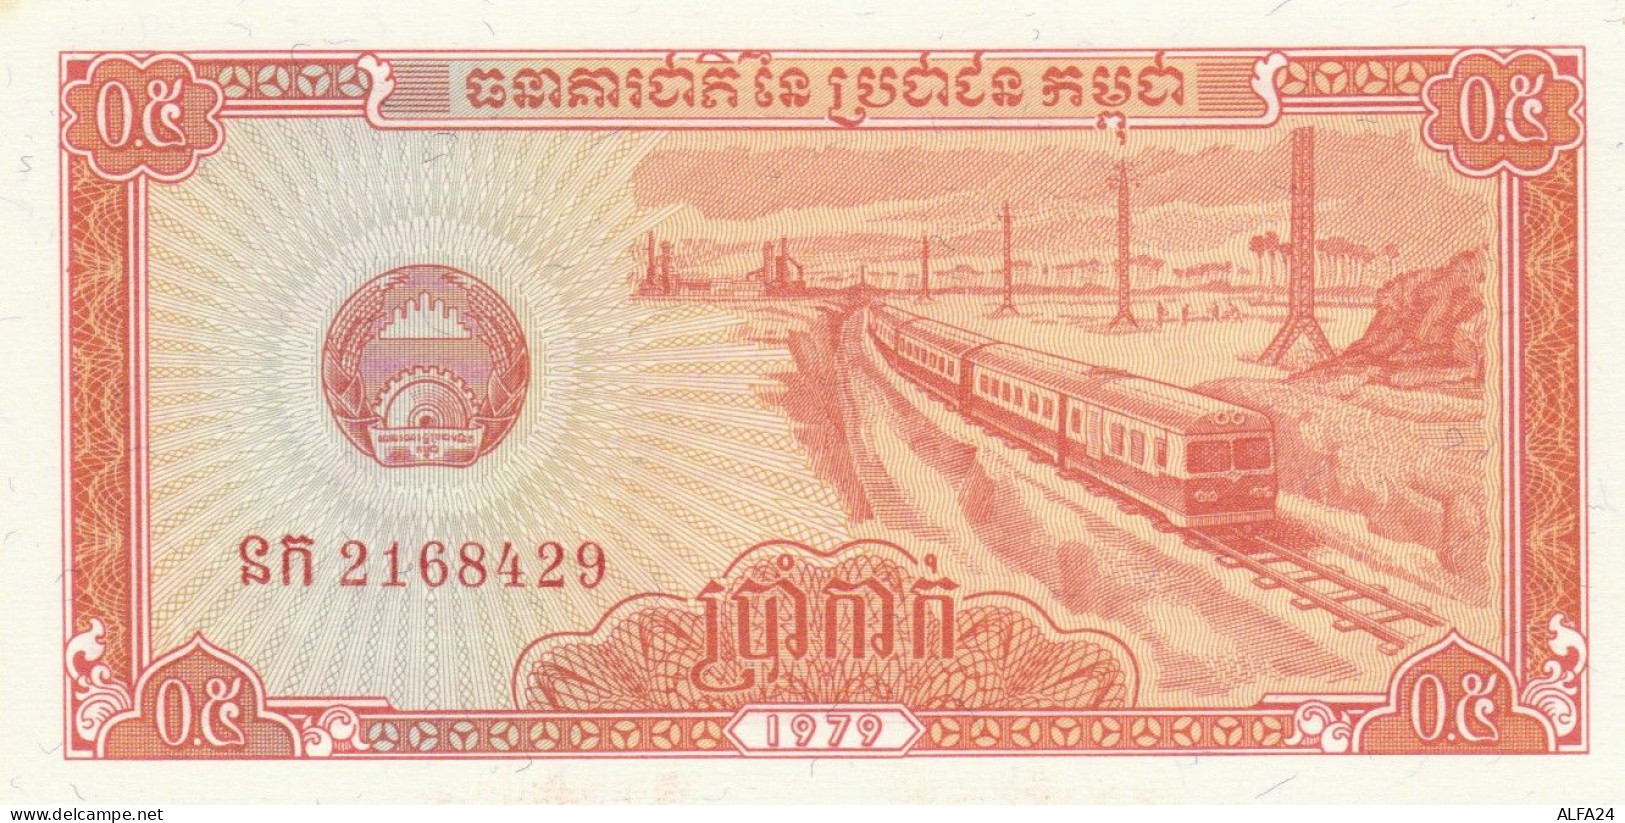 BANCONOTA CAMBOGIA UNC (MK551 - Cambogia